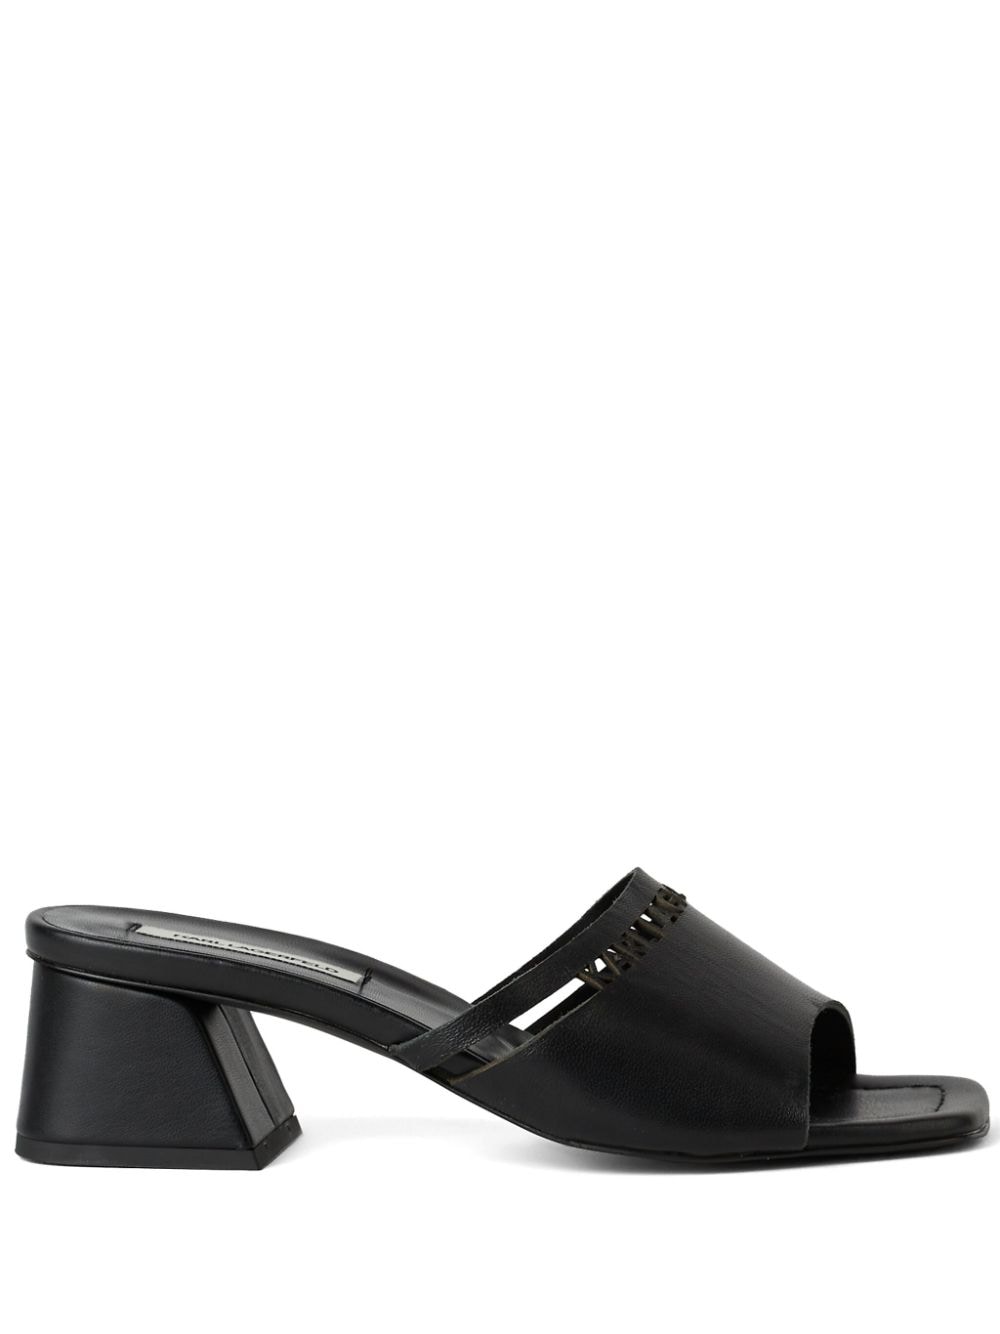 Karl Lagerfeld Plaza 55mm leather sandals - Black von Karl Lagerfeld